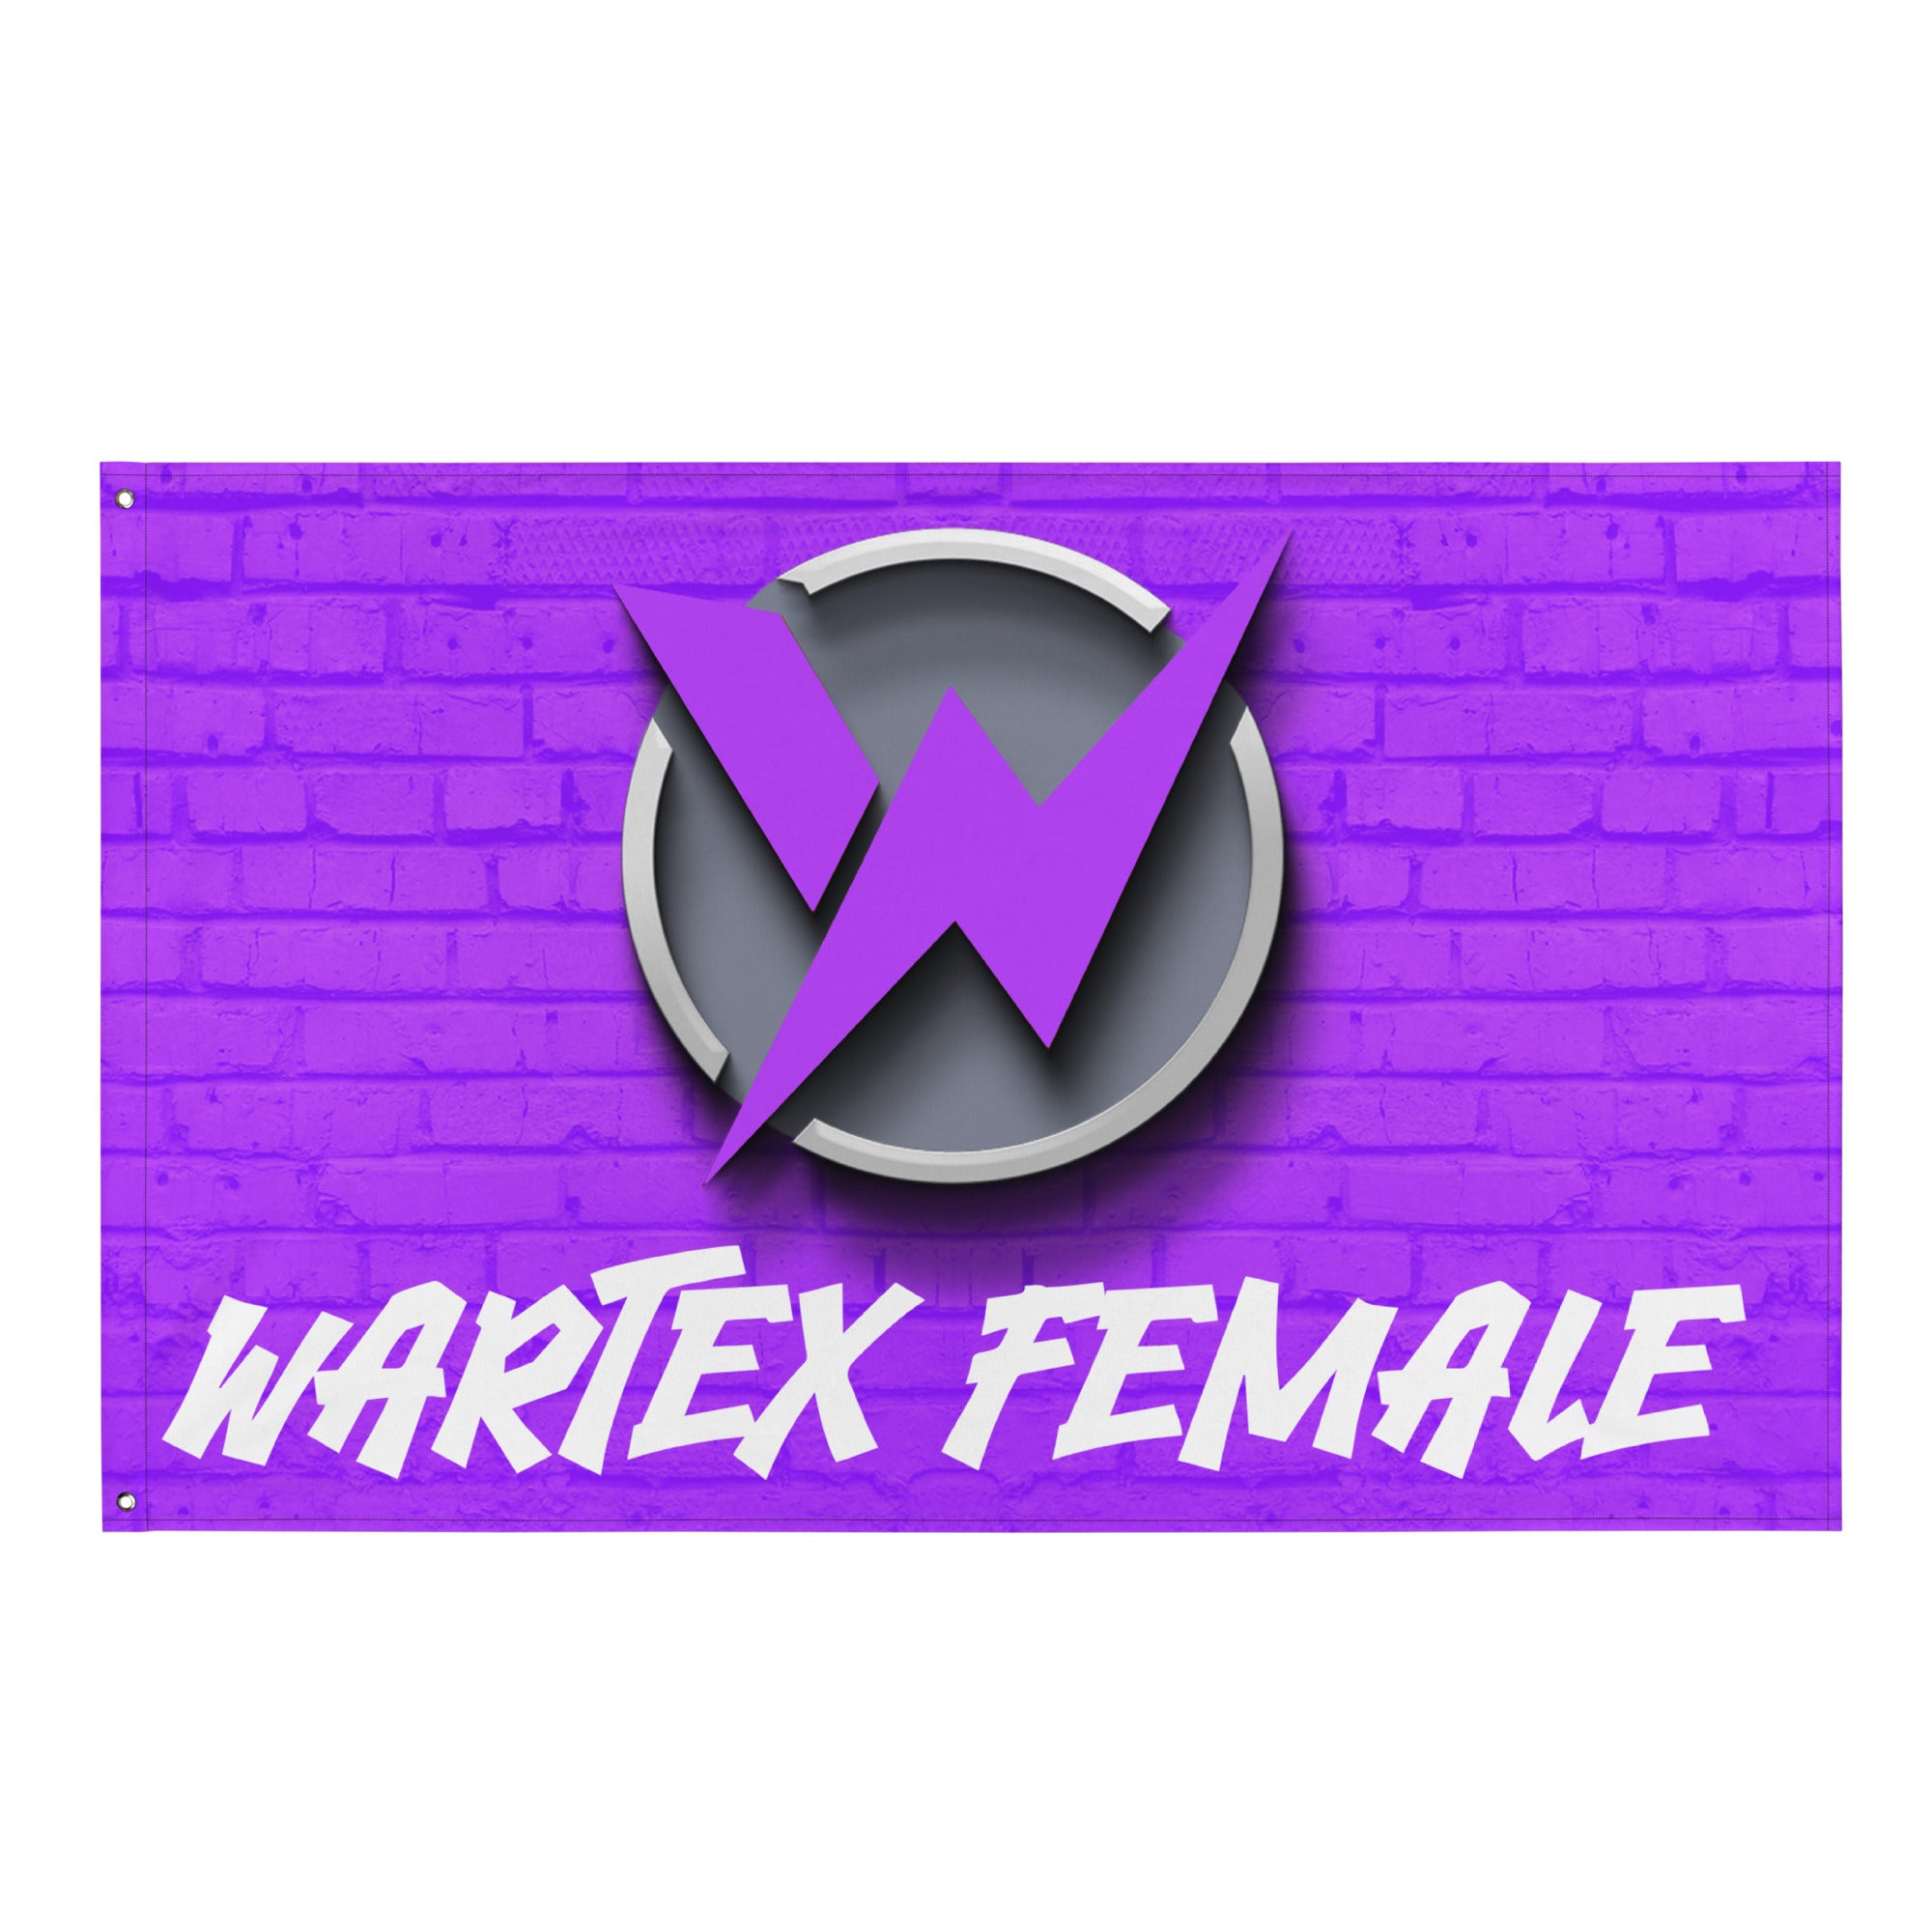 Wartex Female Wandflagge